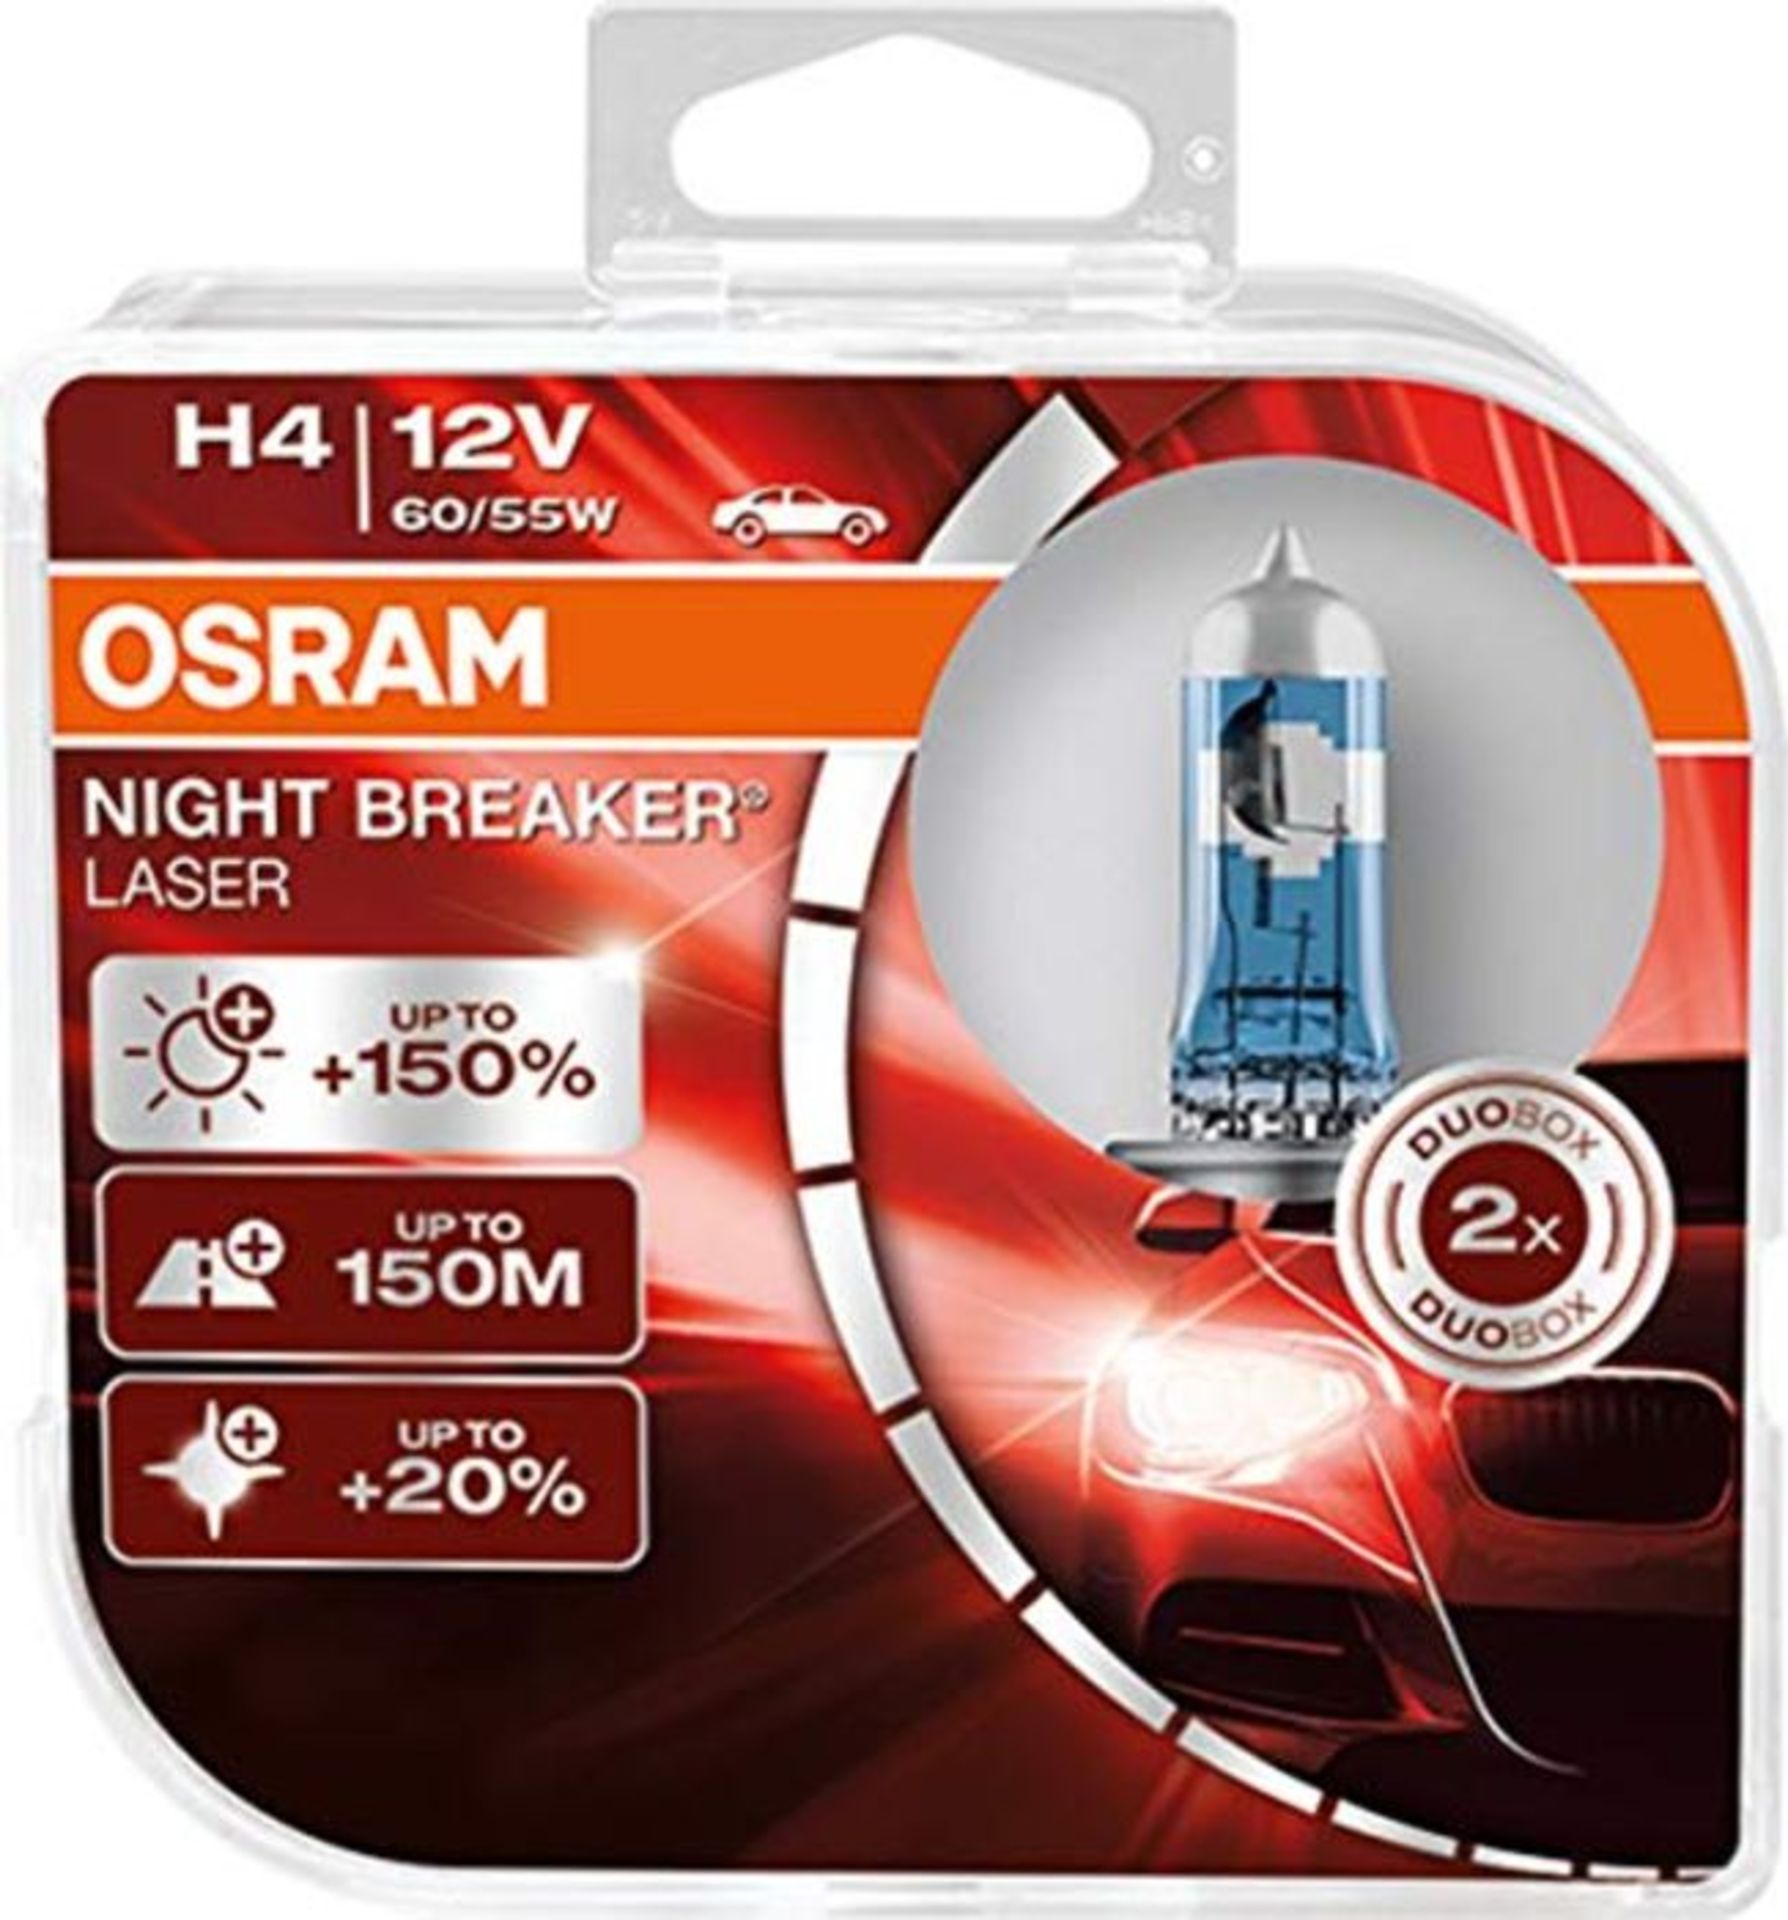 OSRAM NIGHT BREAKER LASER H4, +150% mehr Helligkeit, Halogen-Scheinwerferlampe, 64193N